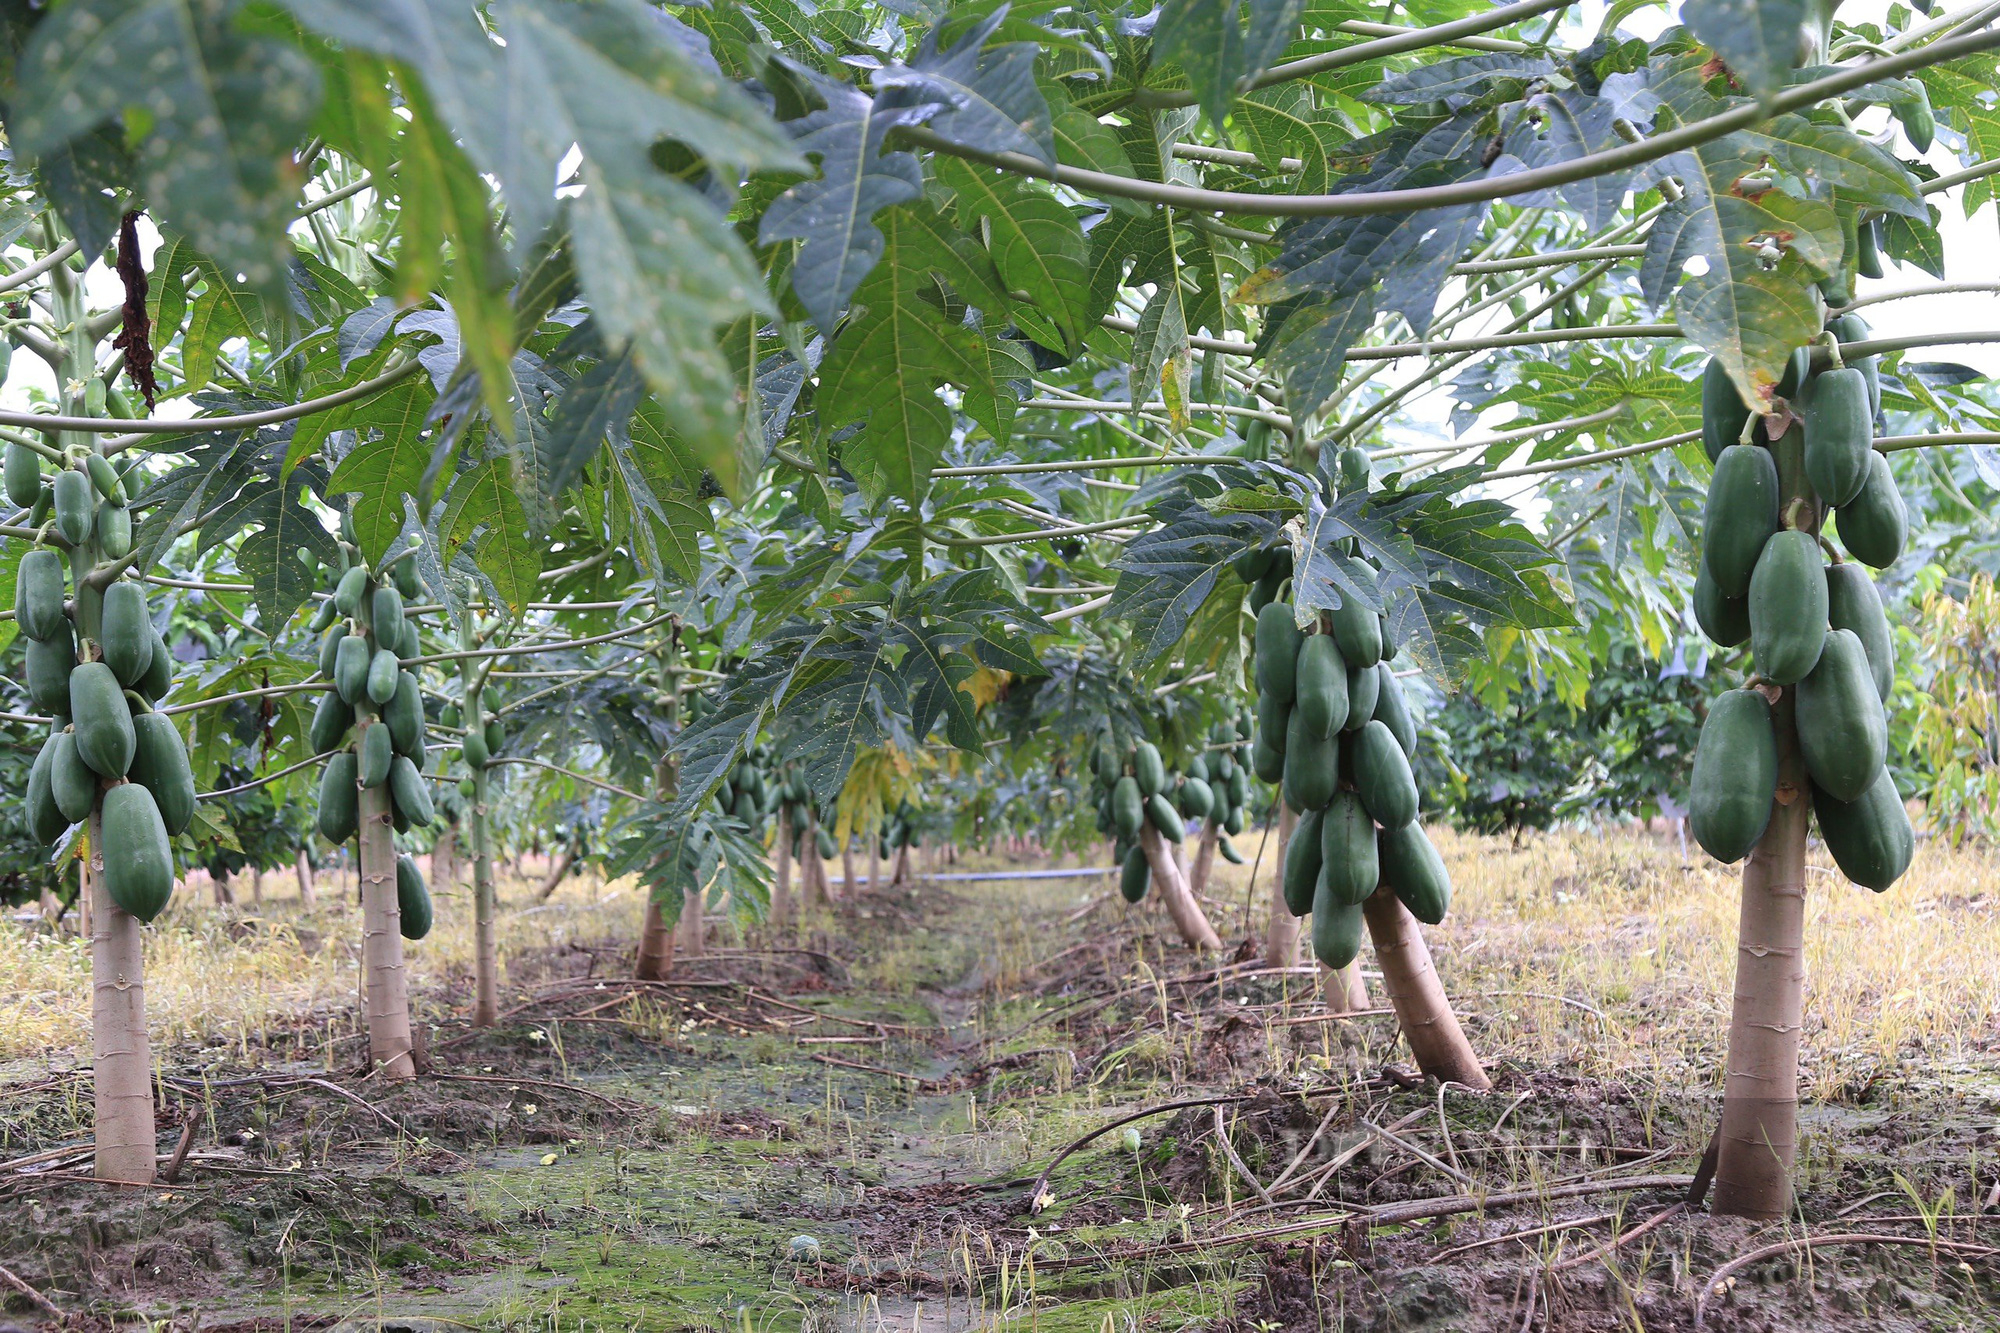 Loại quả vỏ xanh ruột vàng mang lại giá trị kinh tế cao cho người dân ở Đắk Nông - Ảnh 2.